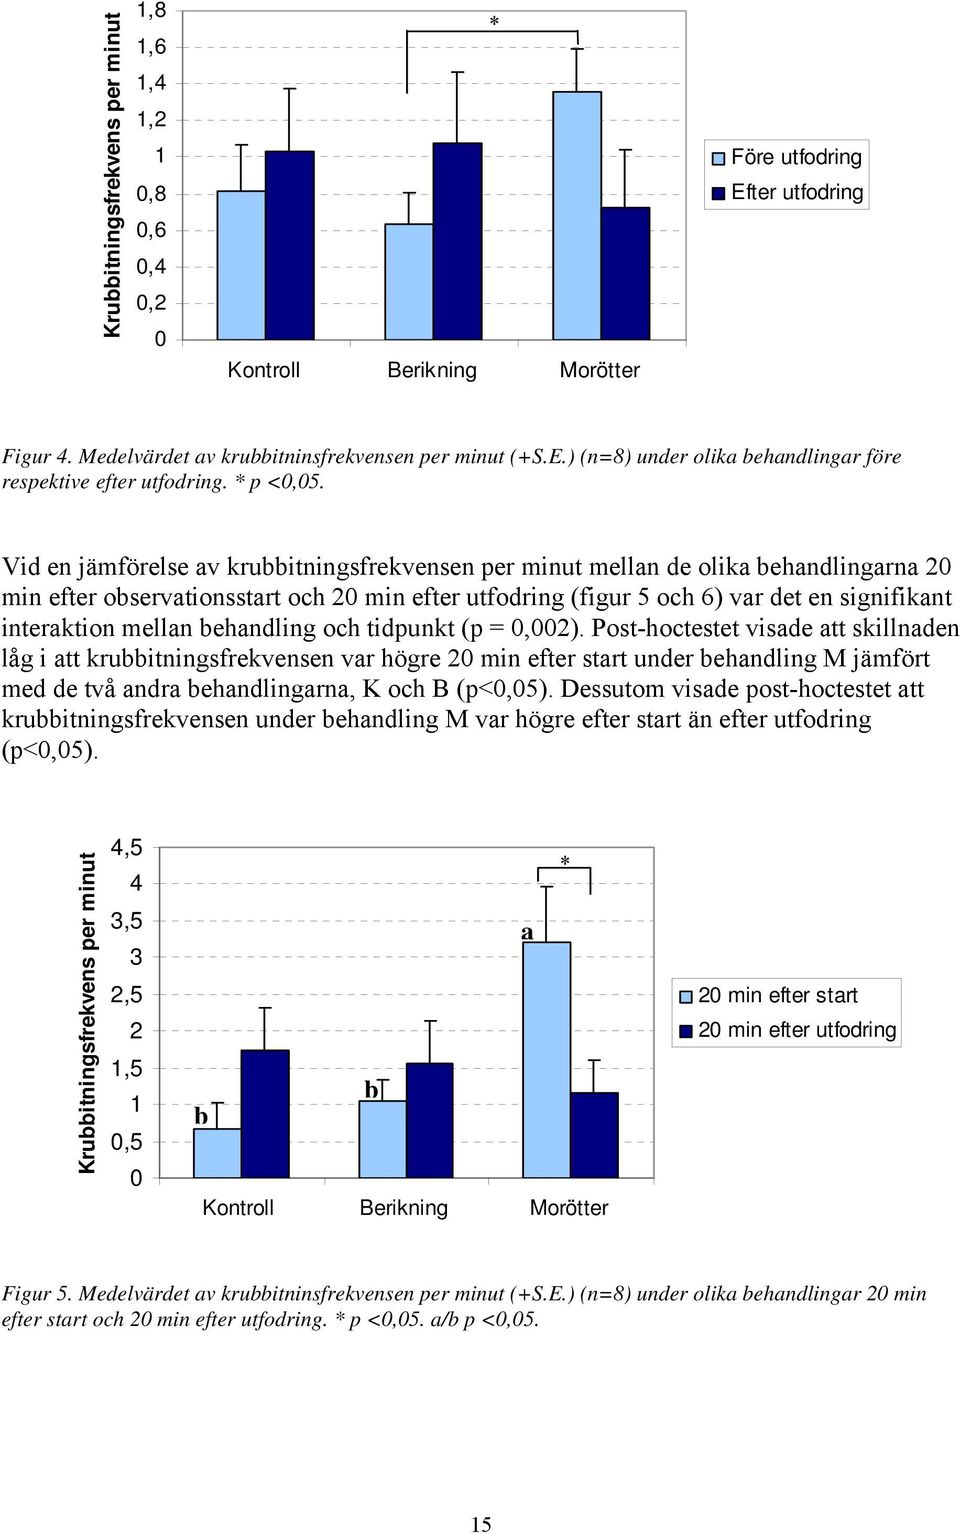 Vid en jämförelse av krubbitningsfrekvensen per minut mellan de olika behandlingarna 20 min efter observationsstart och 20 min efter utfodring (figur 5 och 6) var det en signifikant interaktion